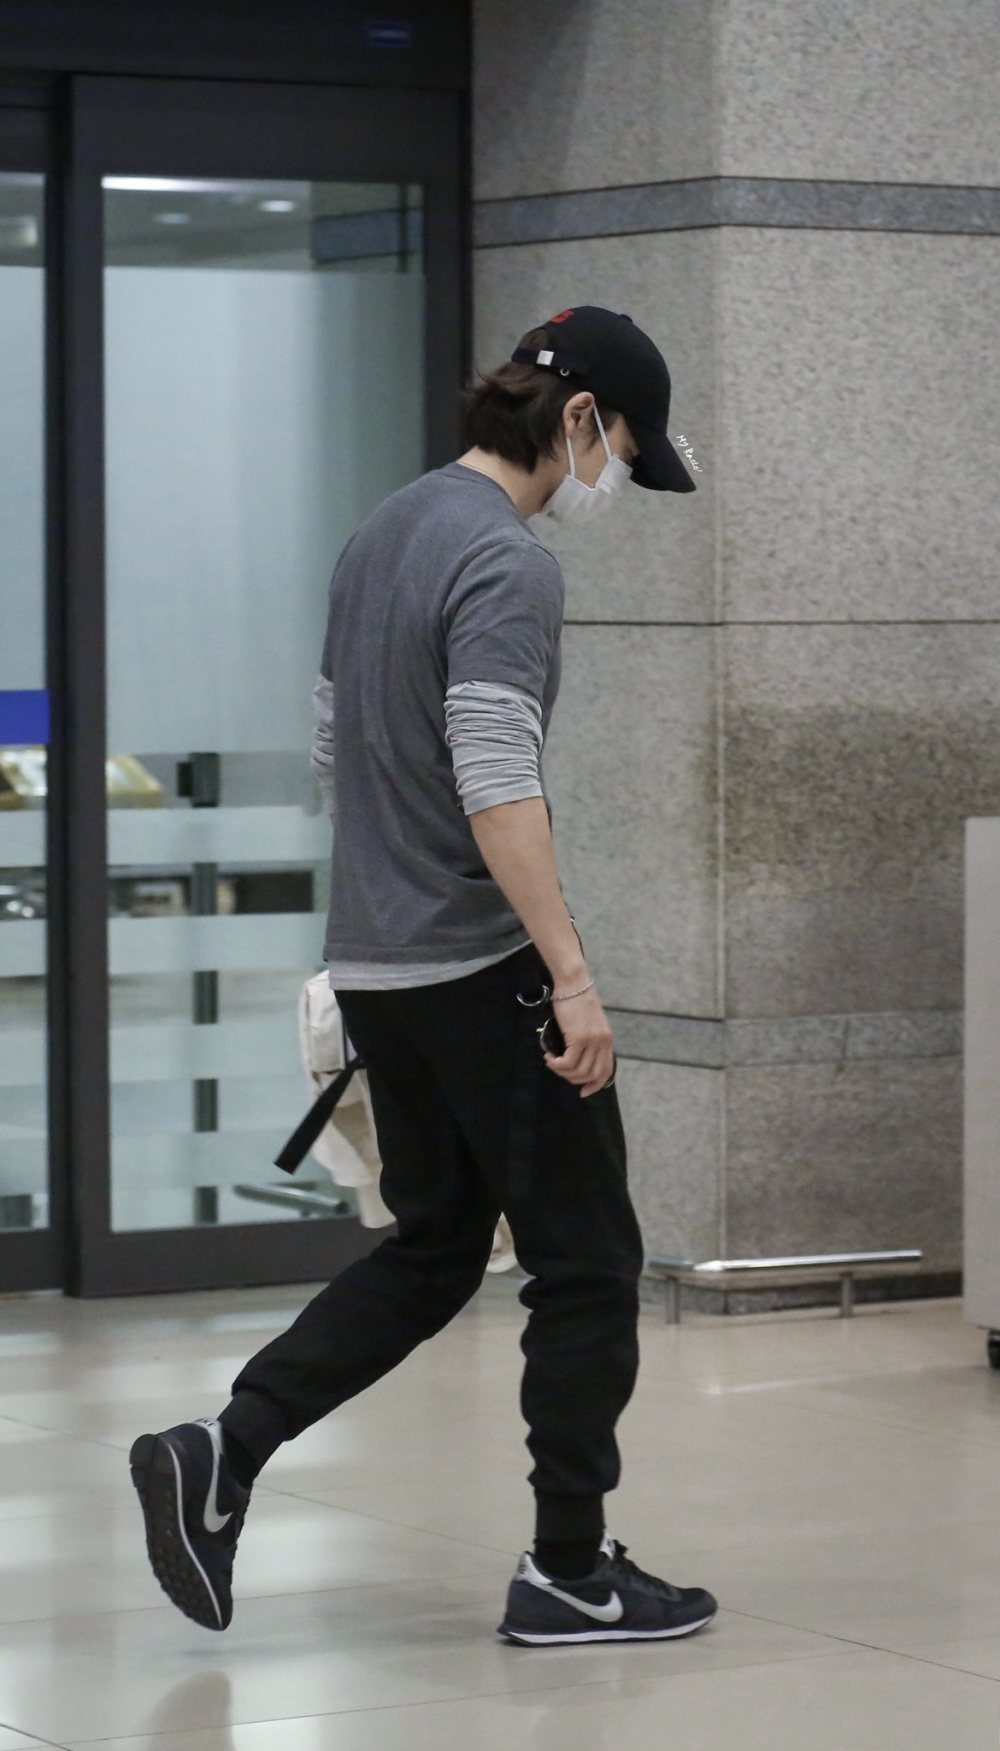 Мода и эстетика Ли Донхэ из Super Junior в аэропорту